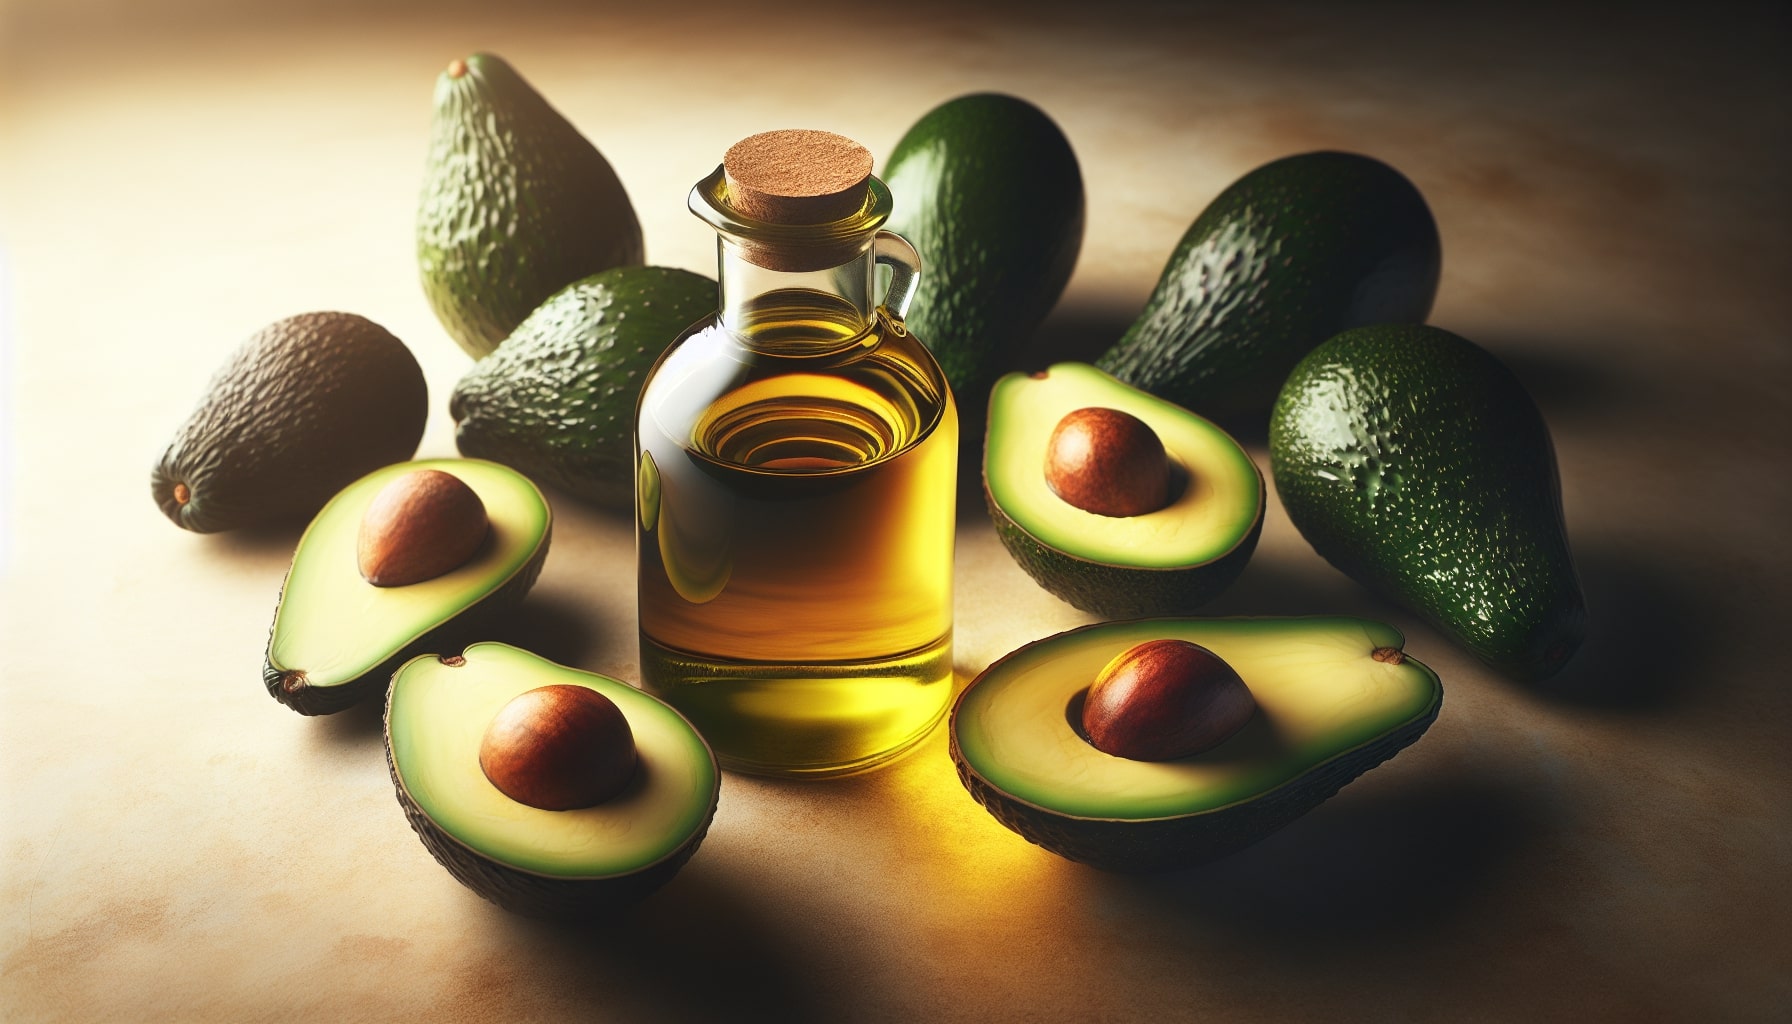 Avokadoolja är en naturlig olja som pressas från köttet av avokadofrukten.